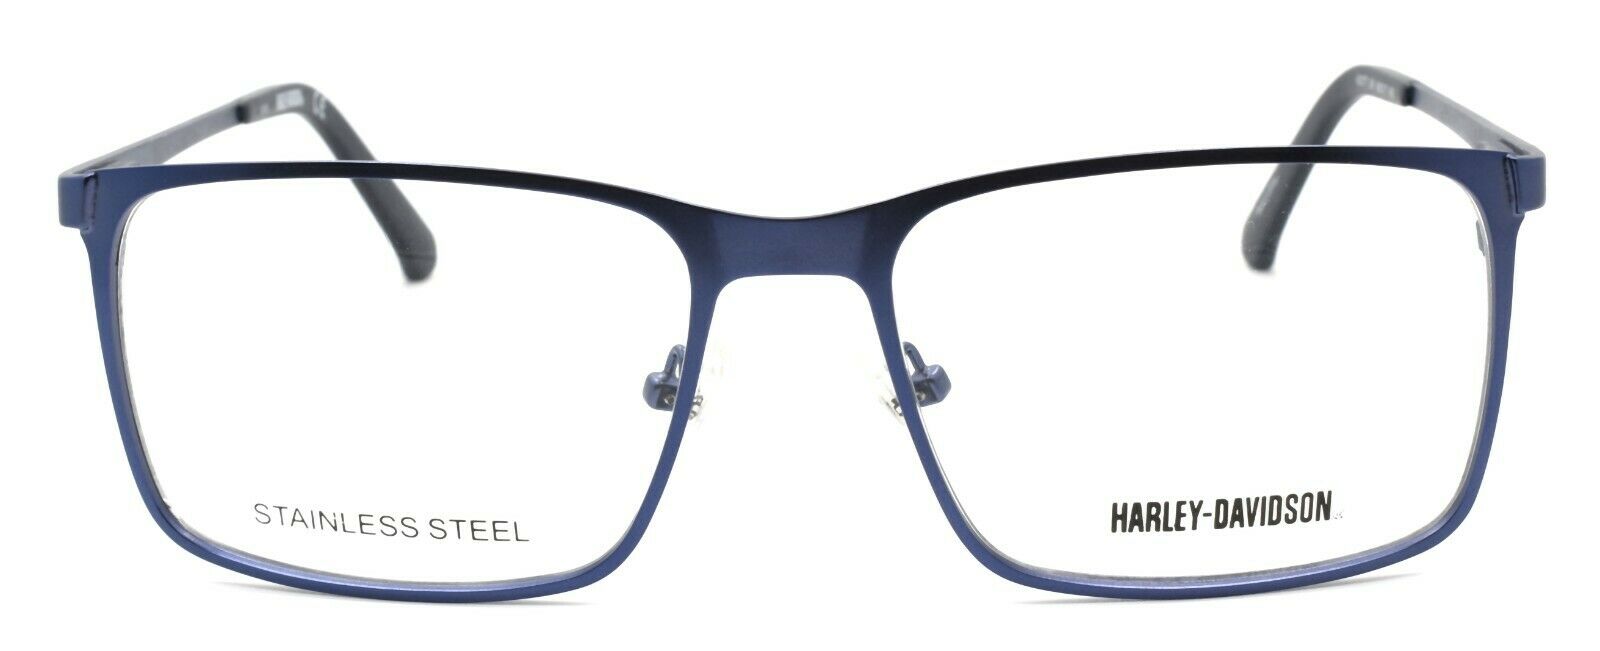 2-Harley Davidson HD0777 091 Men's Eyeglasses Frames 56-17-145 Matte Blue + Case-664689964819-IKSpecs